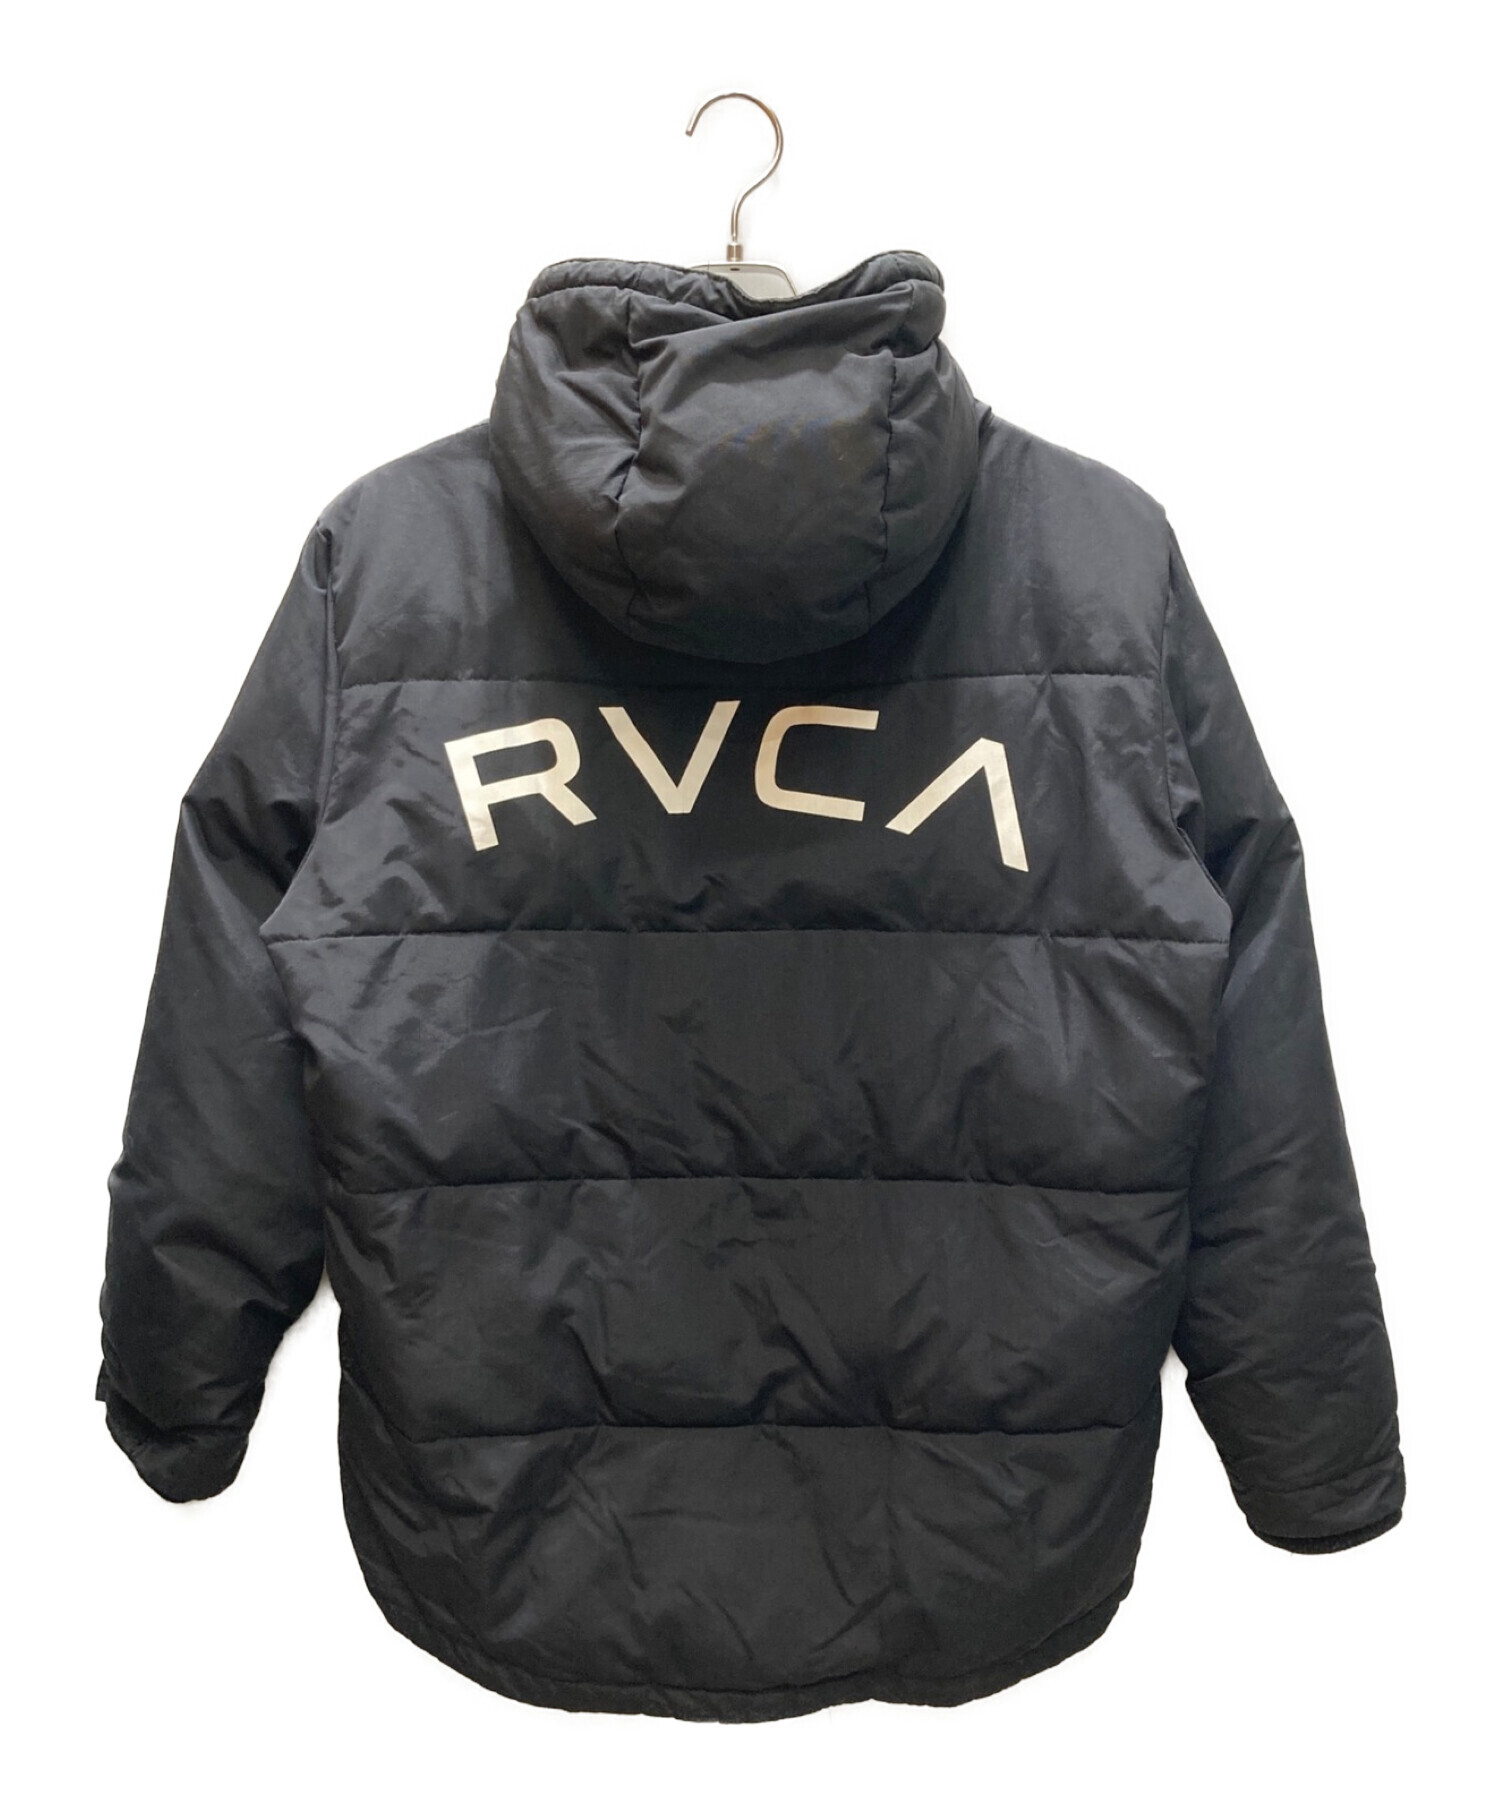 ☆レア☆ ルーカ RVCA USA メンズジャケット (サンプル) NEW